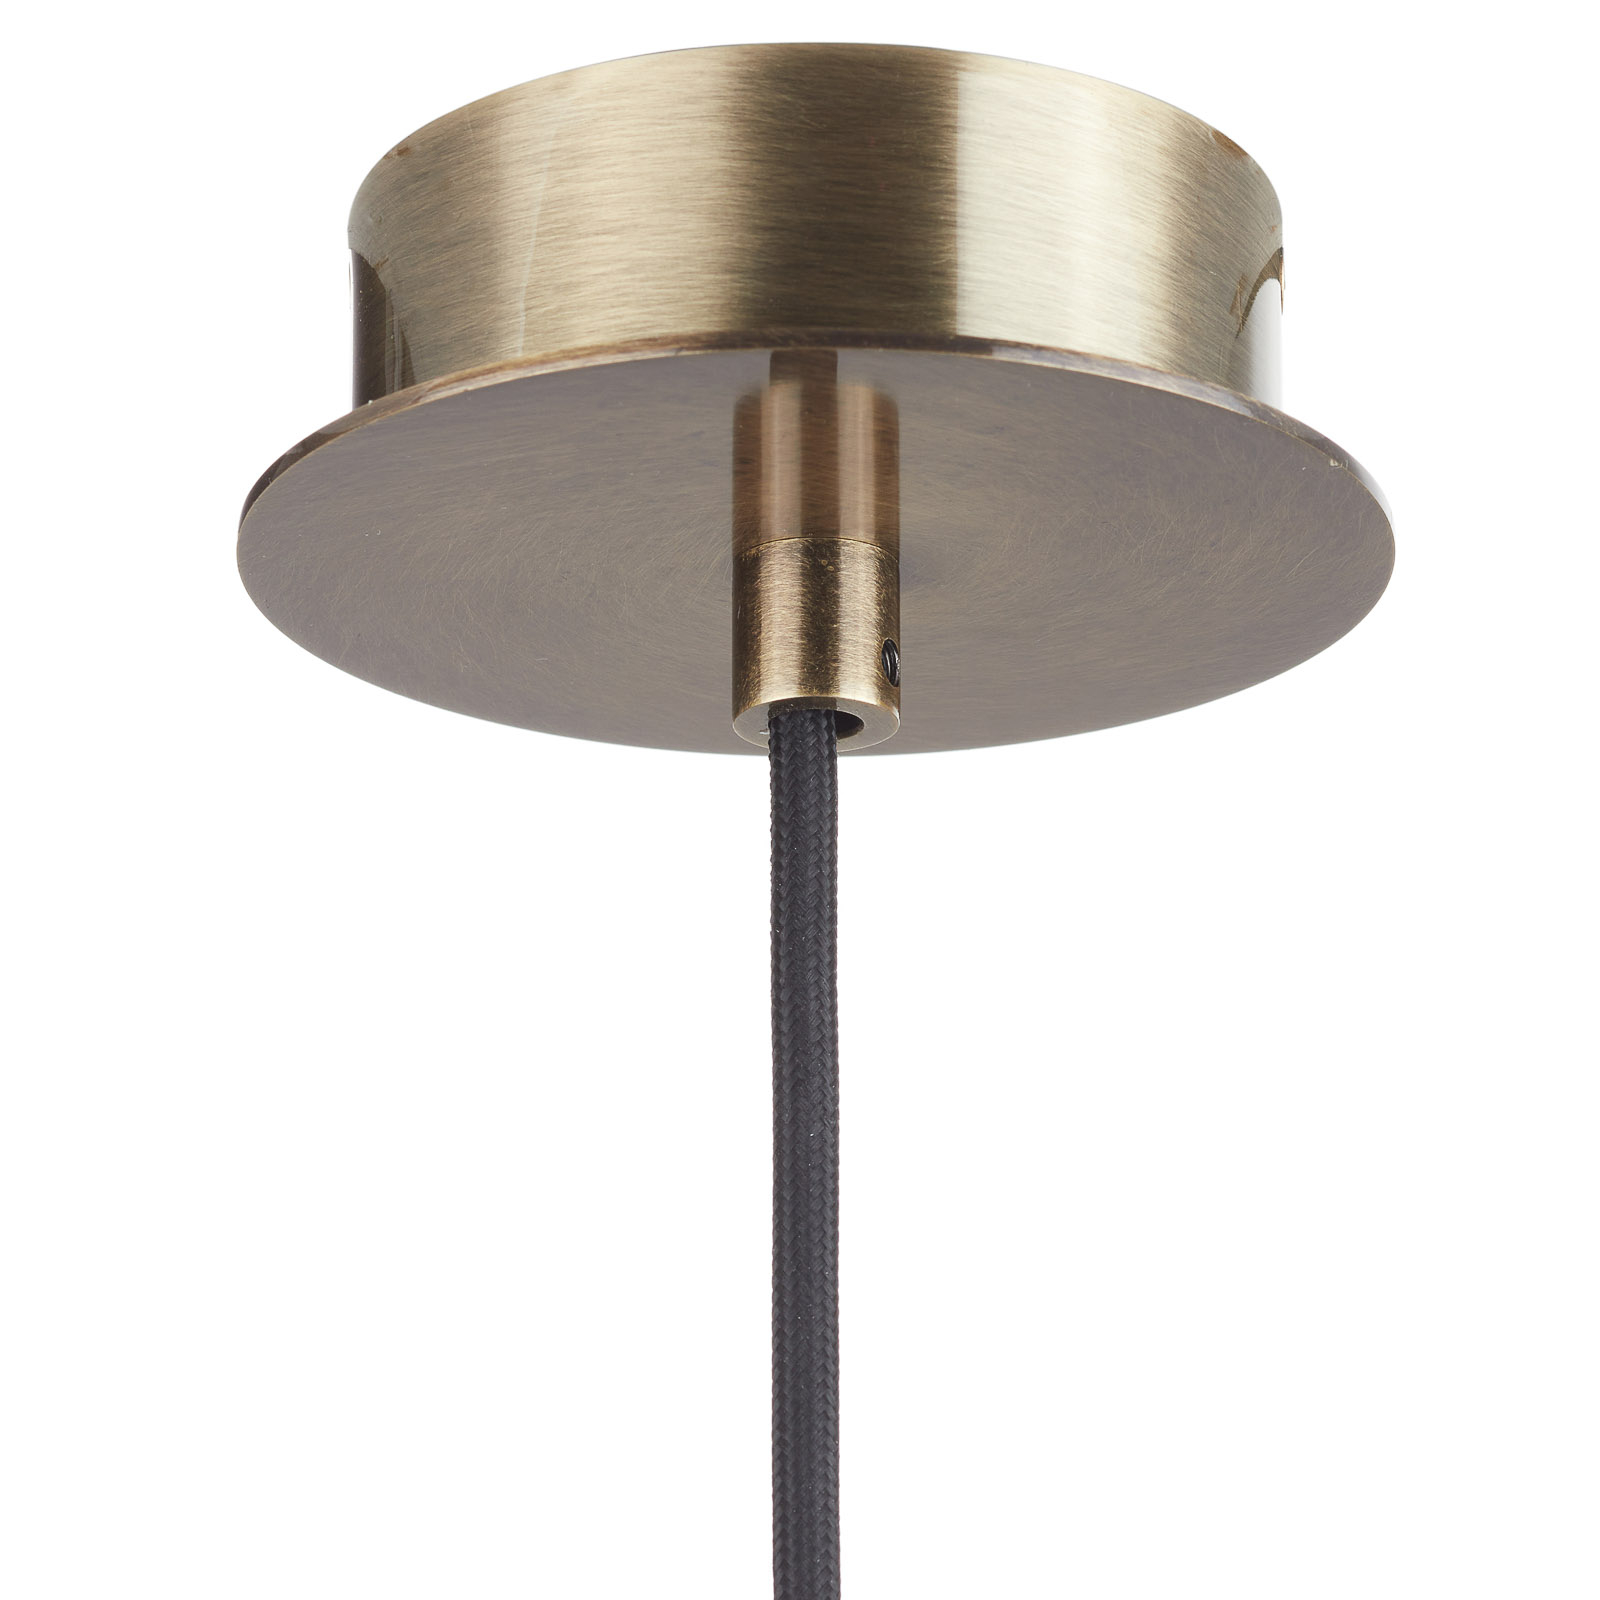 Bover Tibeta 02 - LED pendant light, antique brass